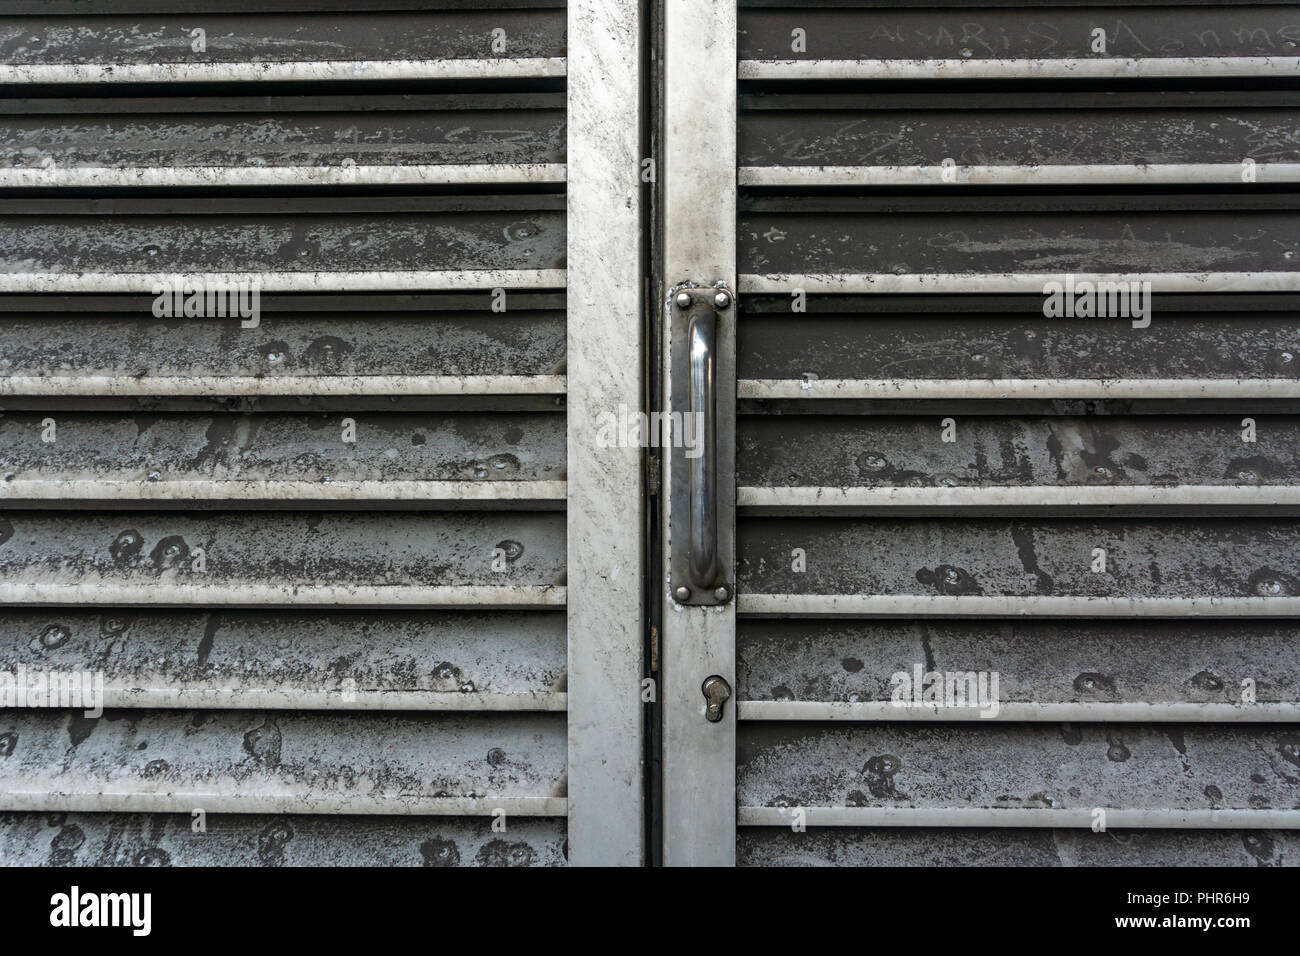 Berlino, Germania, 29 agosto 2018: Full Frame Close-Up della griglia di ventilazione porta Foto Stock